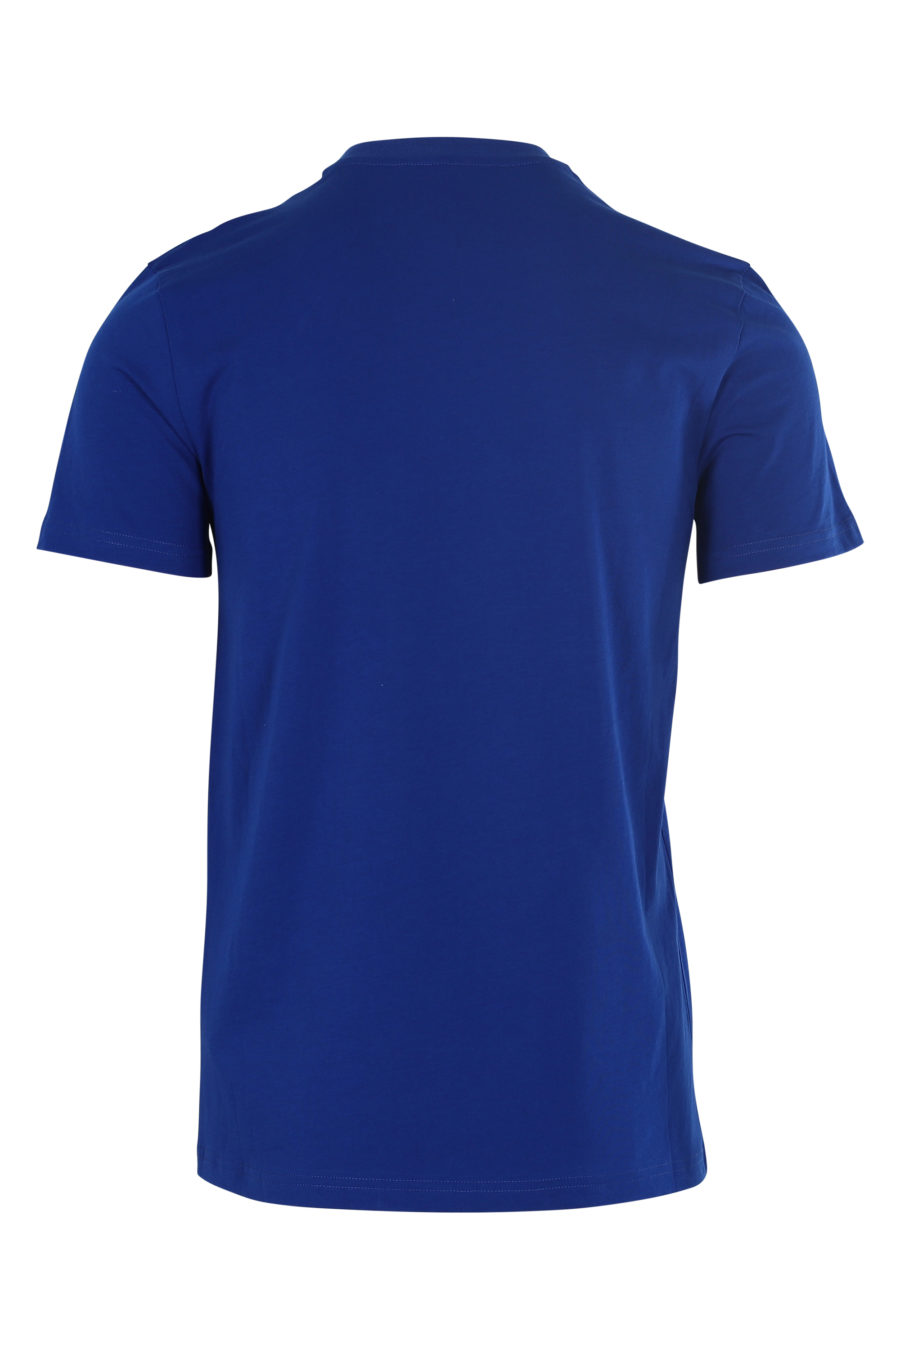 T-shirt azul escura com o logótipo "Couture" - IMG 6098